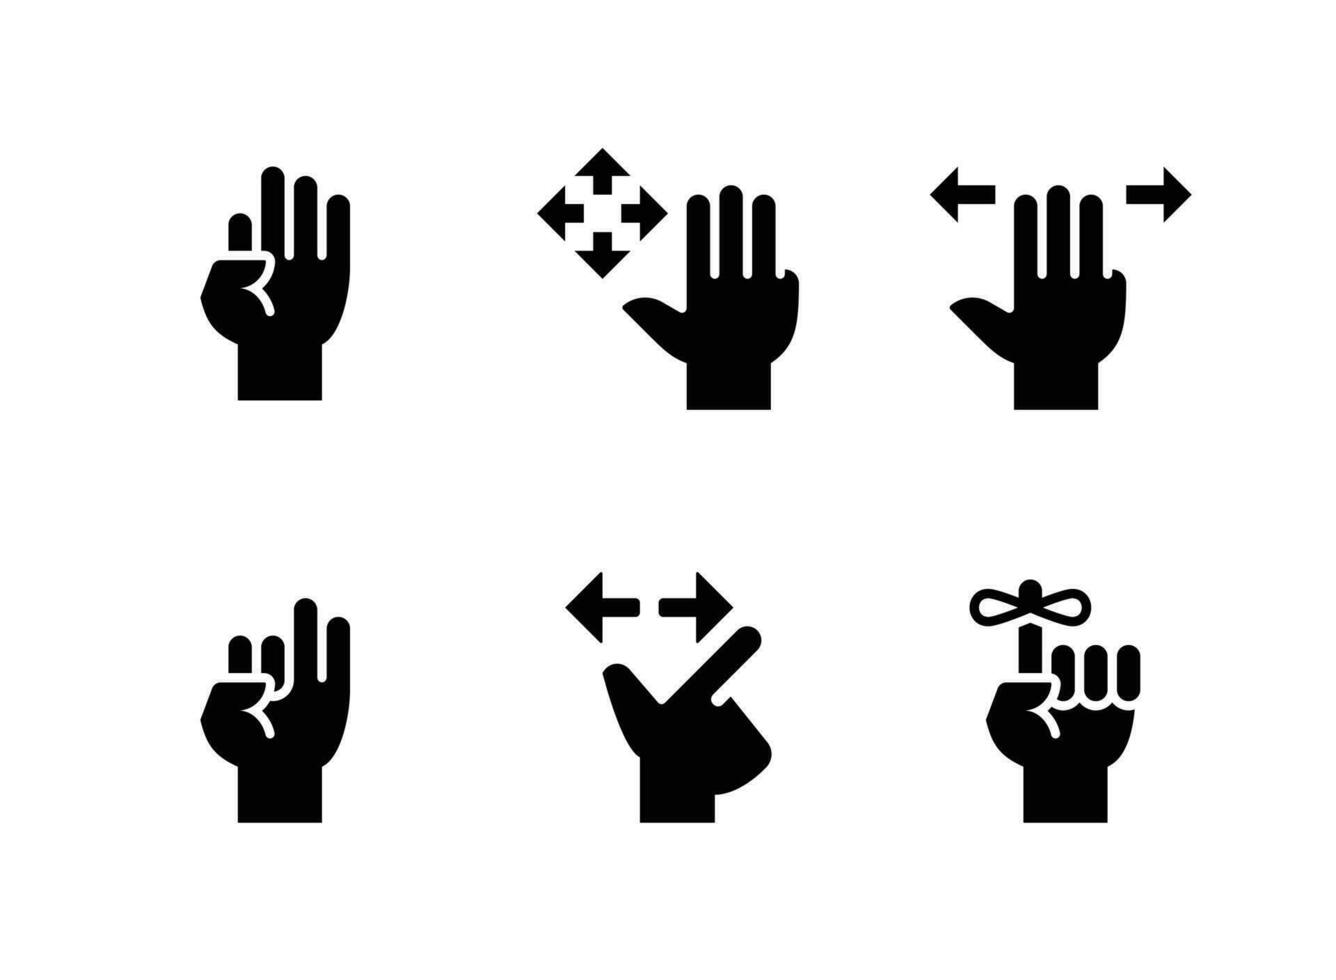 conjunto simples de ícones sólidos vetoriais relacionados a gestos de mão vetor